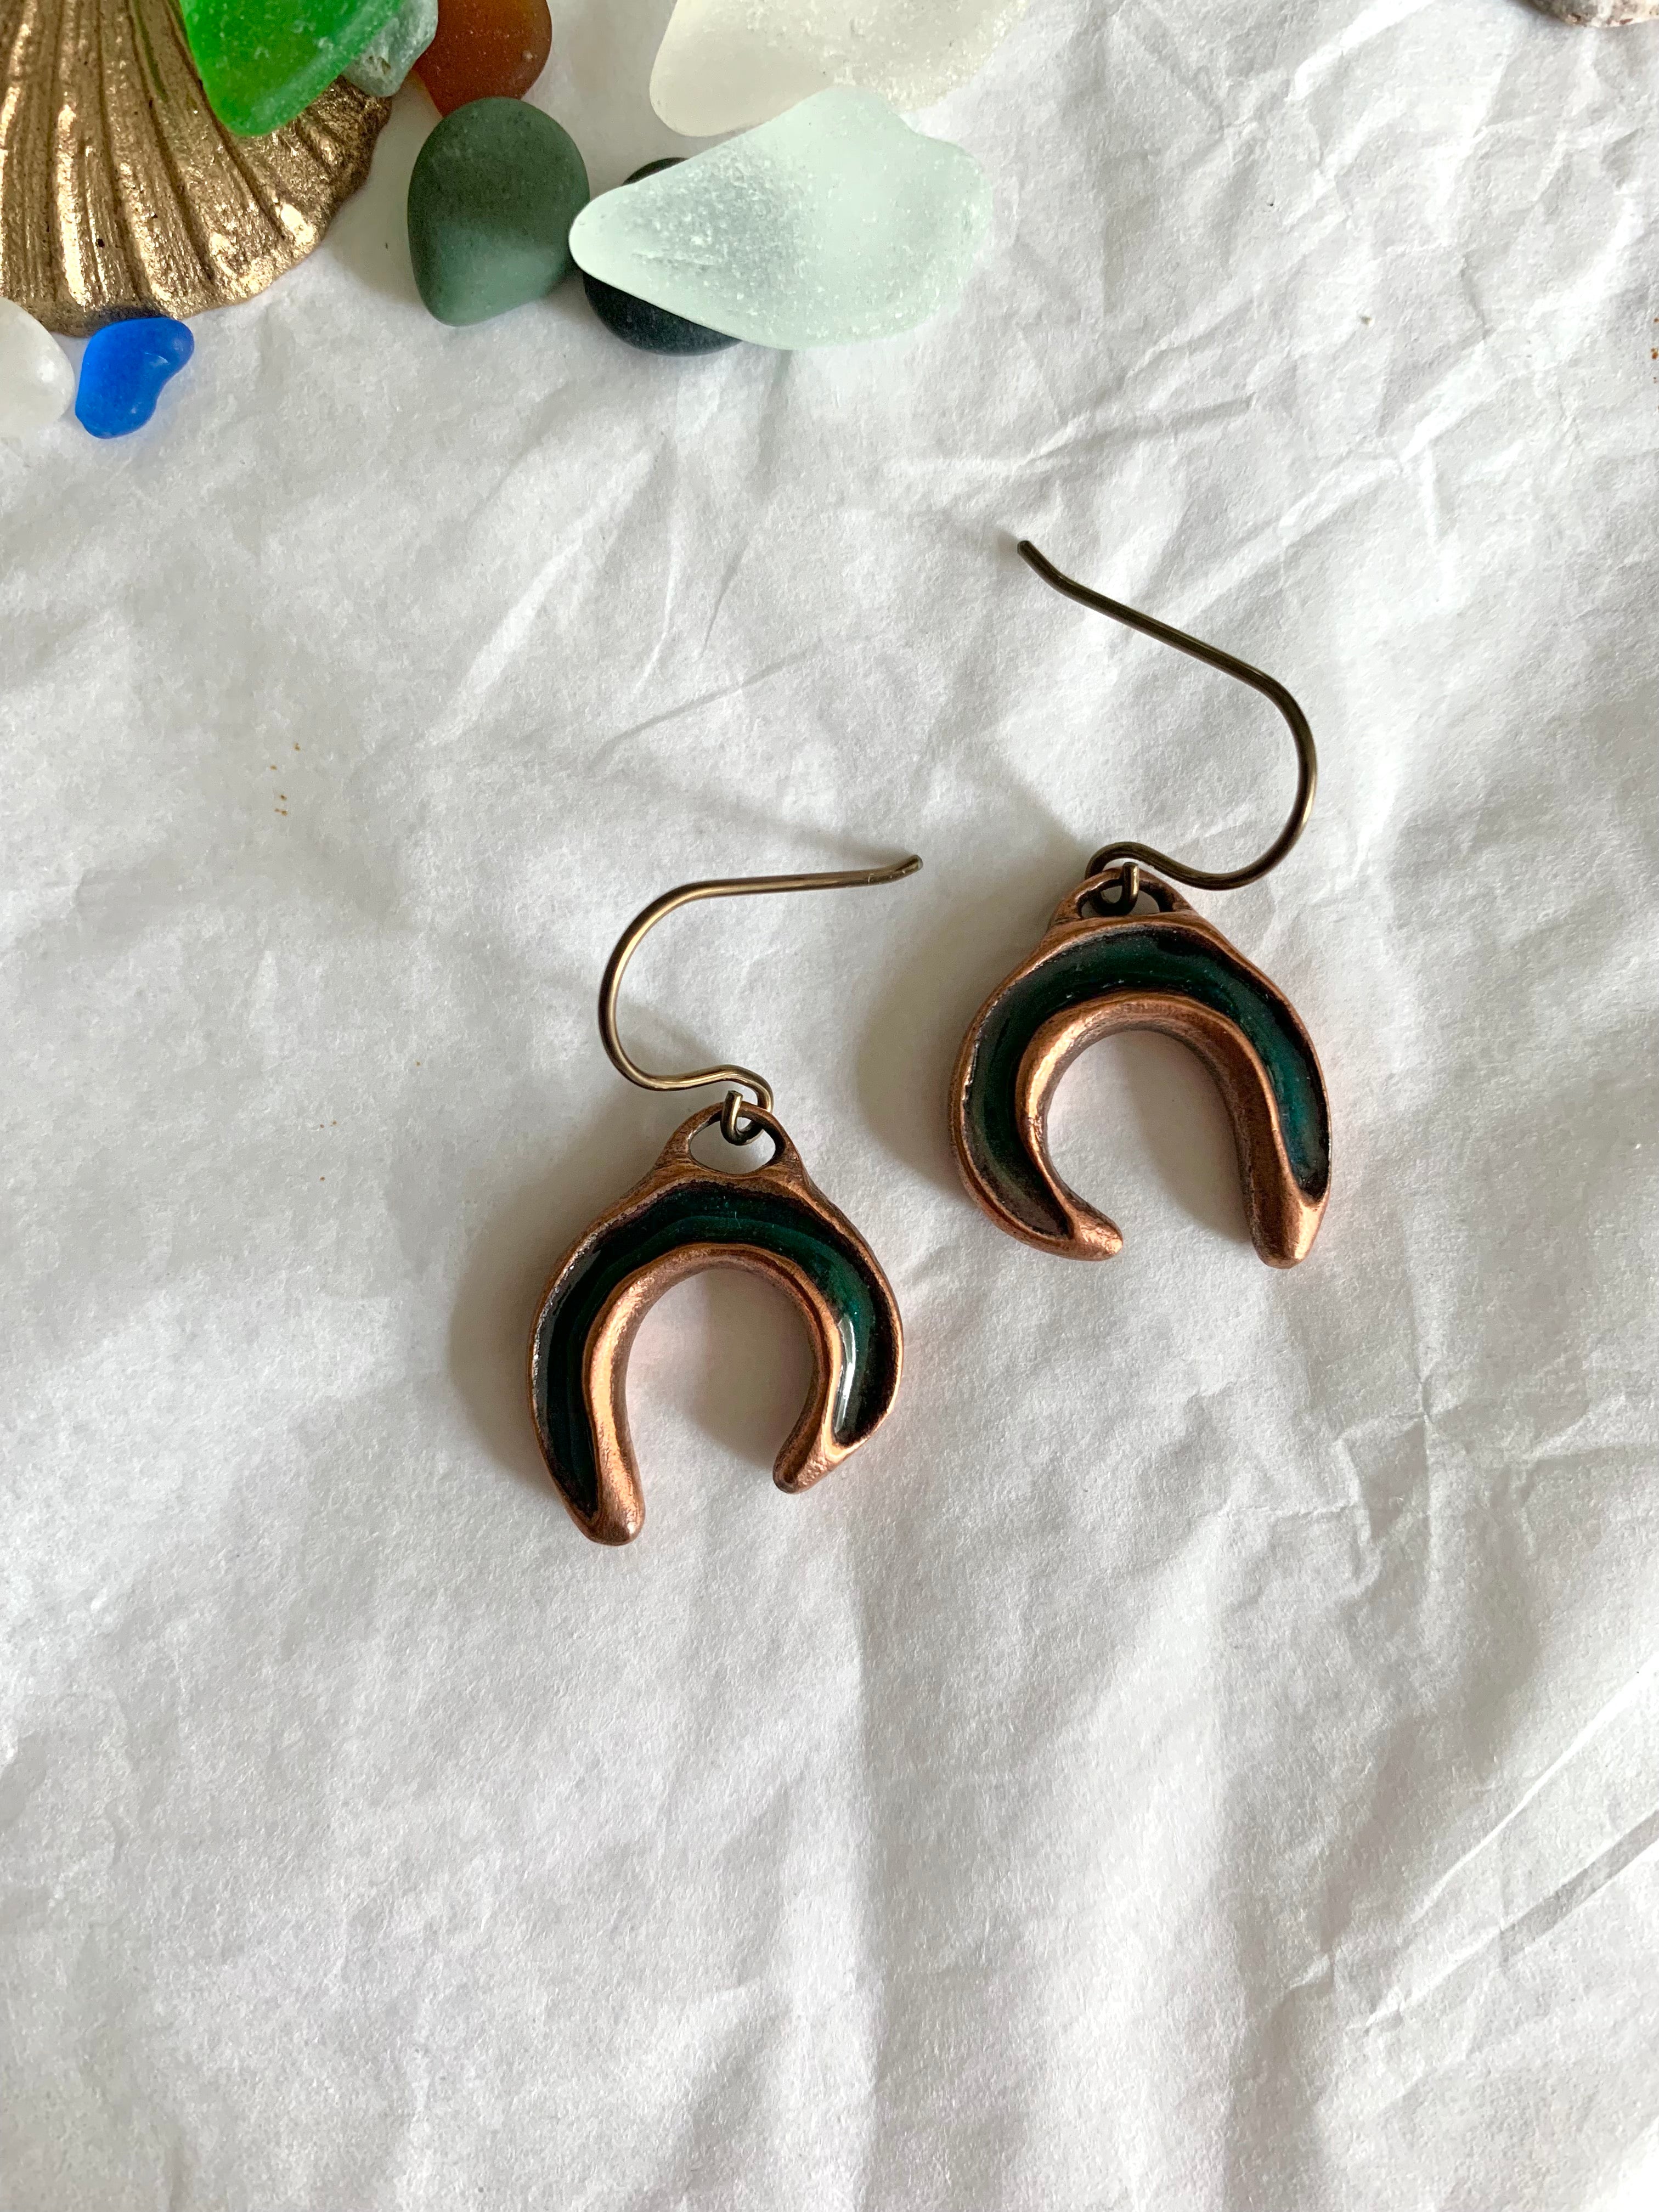 Handmade copper enamel earrings with ocean treasure